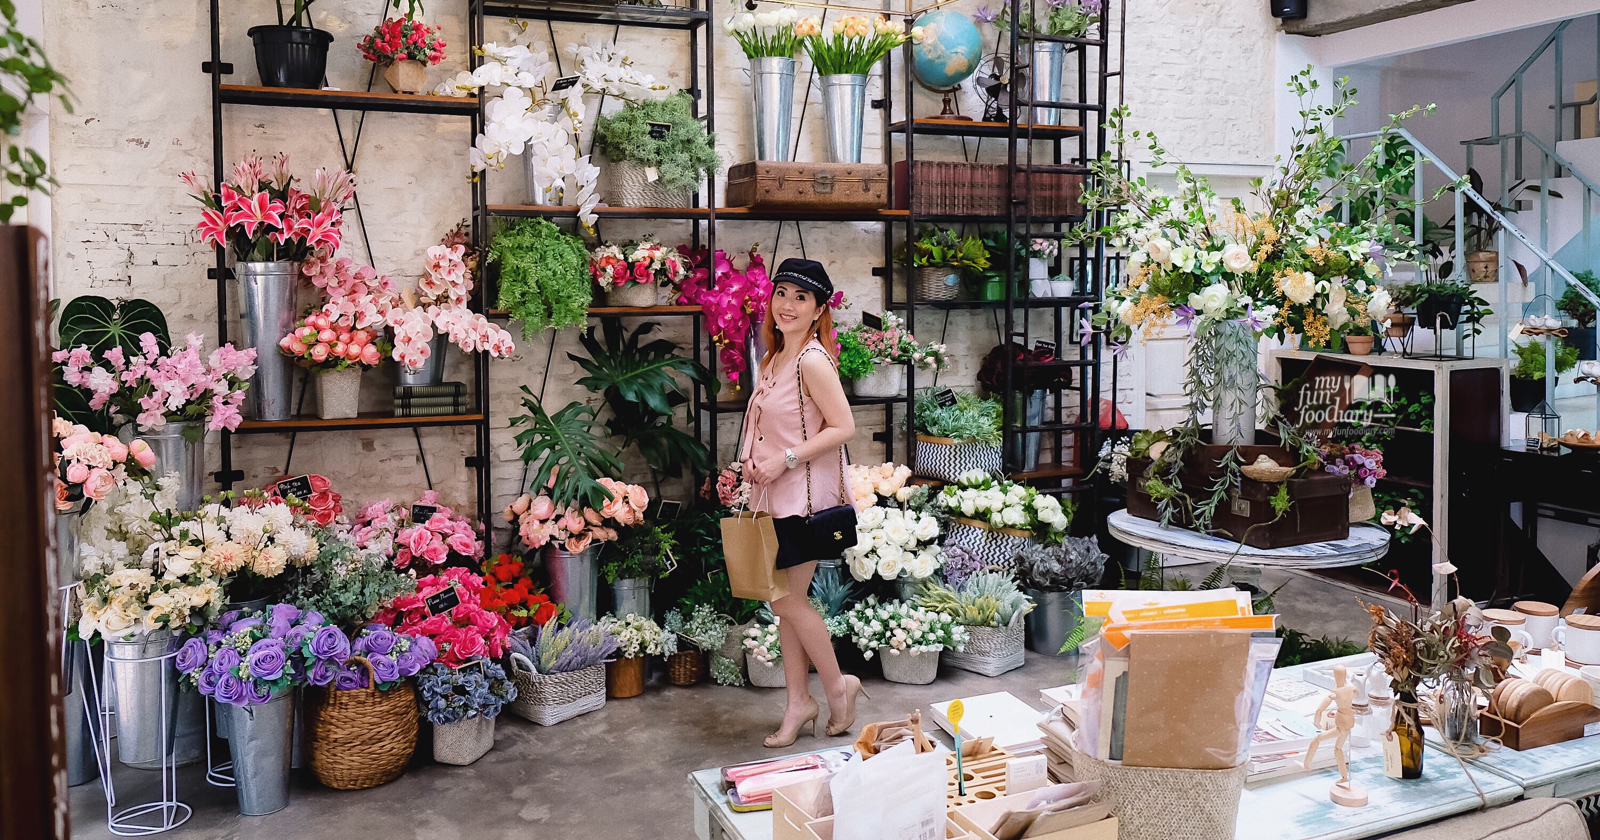 [NEW] Onni House Jakarta - Flower Market & Kitchen | myfunfoodiary.com